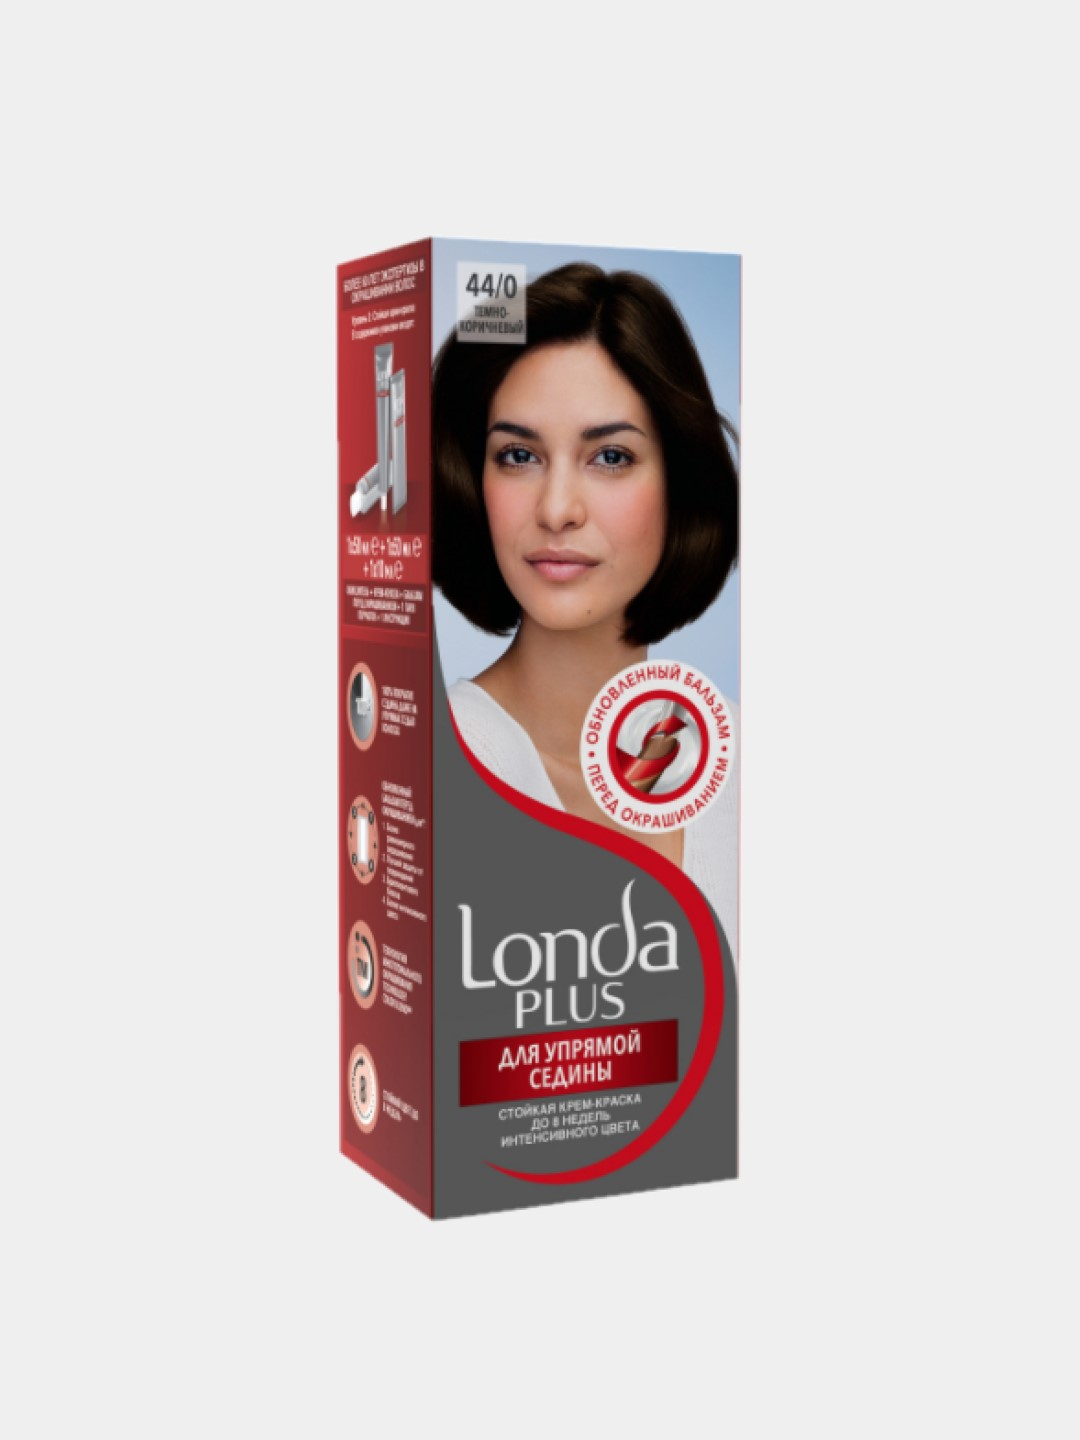 Краска для волос темный седой. Лонда плюс для упрямой седины. Краска лонда плюс. Краска для волос Londa Plus для упрямой седины 5/5. Краска для волос лонда для упрямой седины.